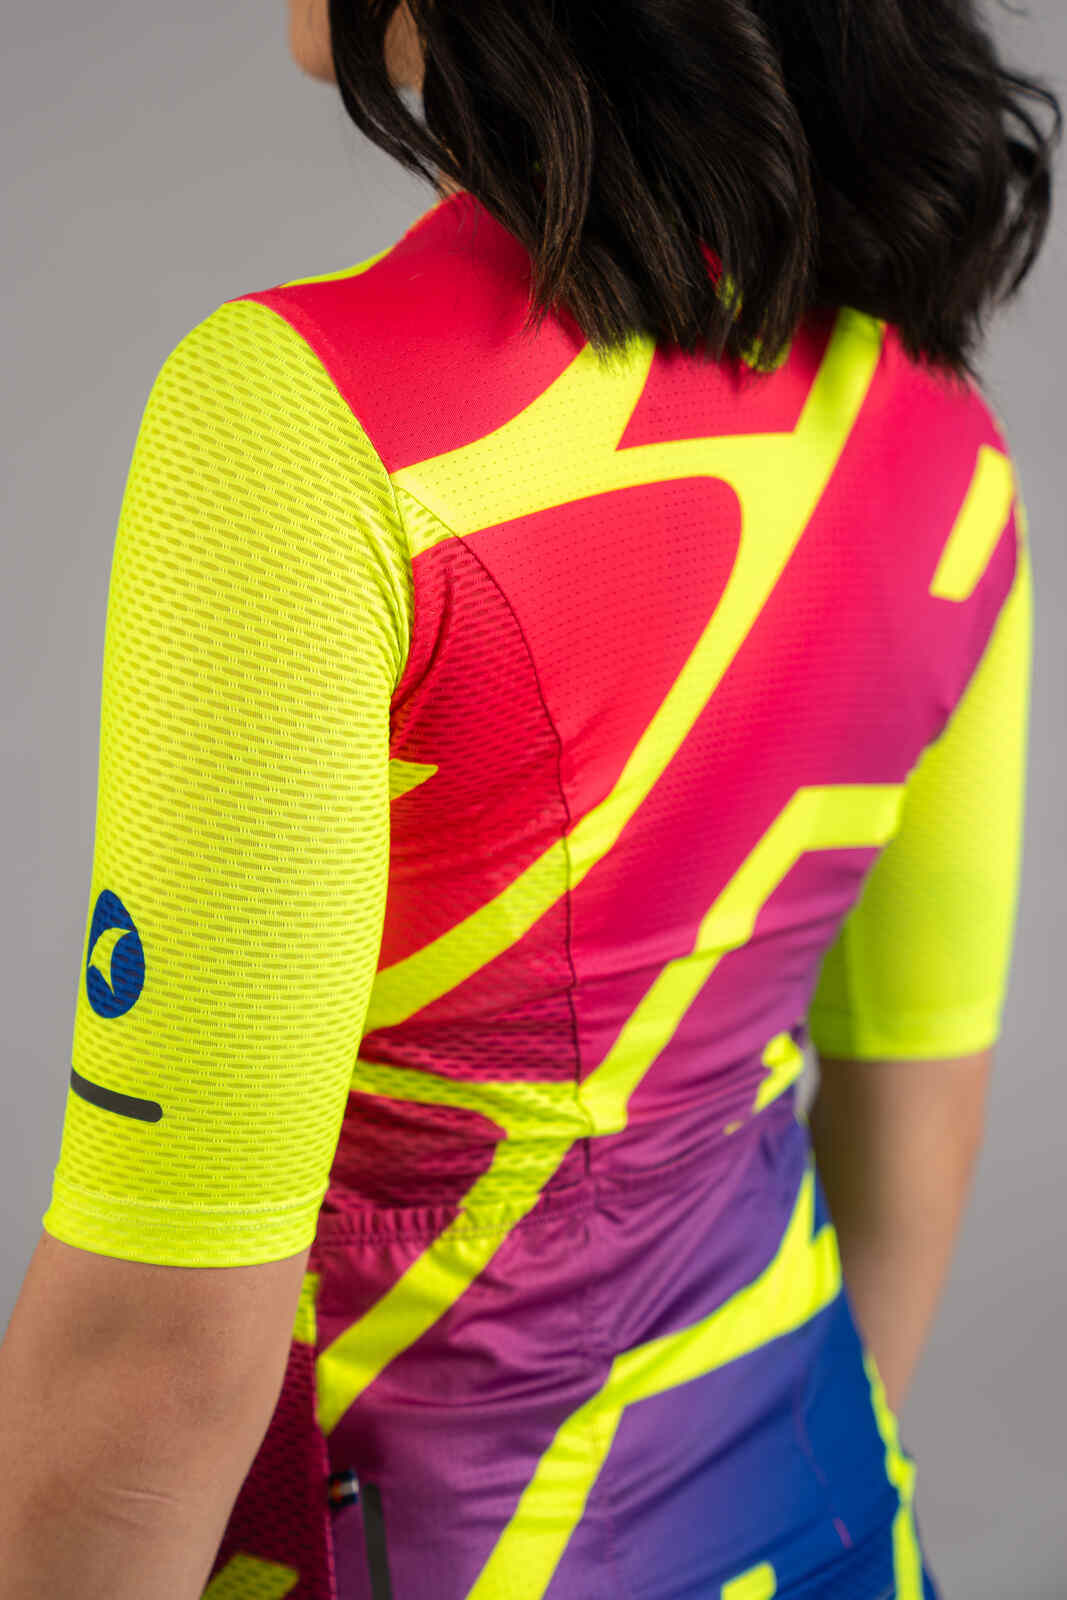 Women's High-Viz Yellow Mesh Cycling Jersey - Mesh Fabric Close-Up